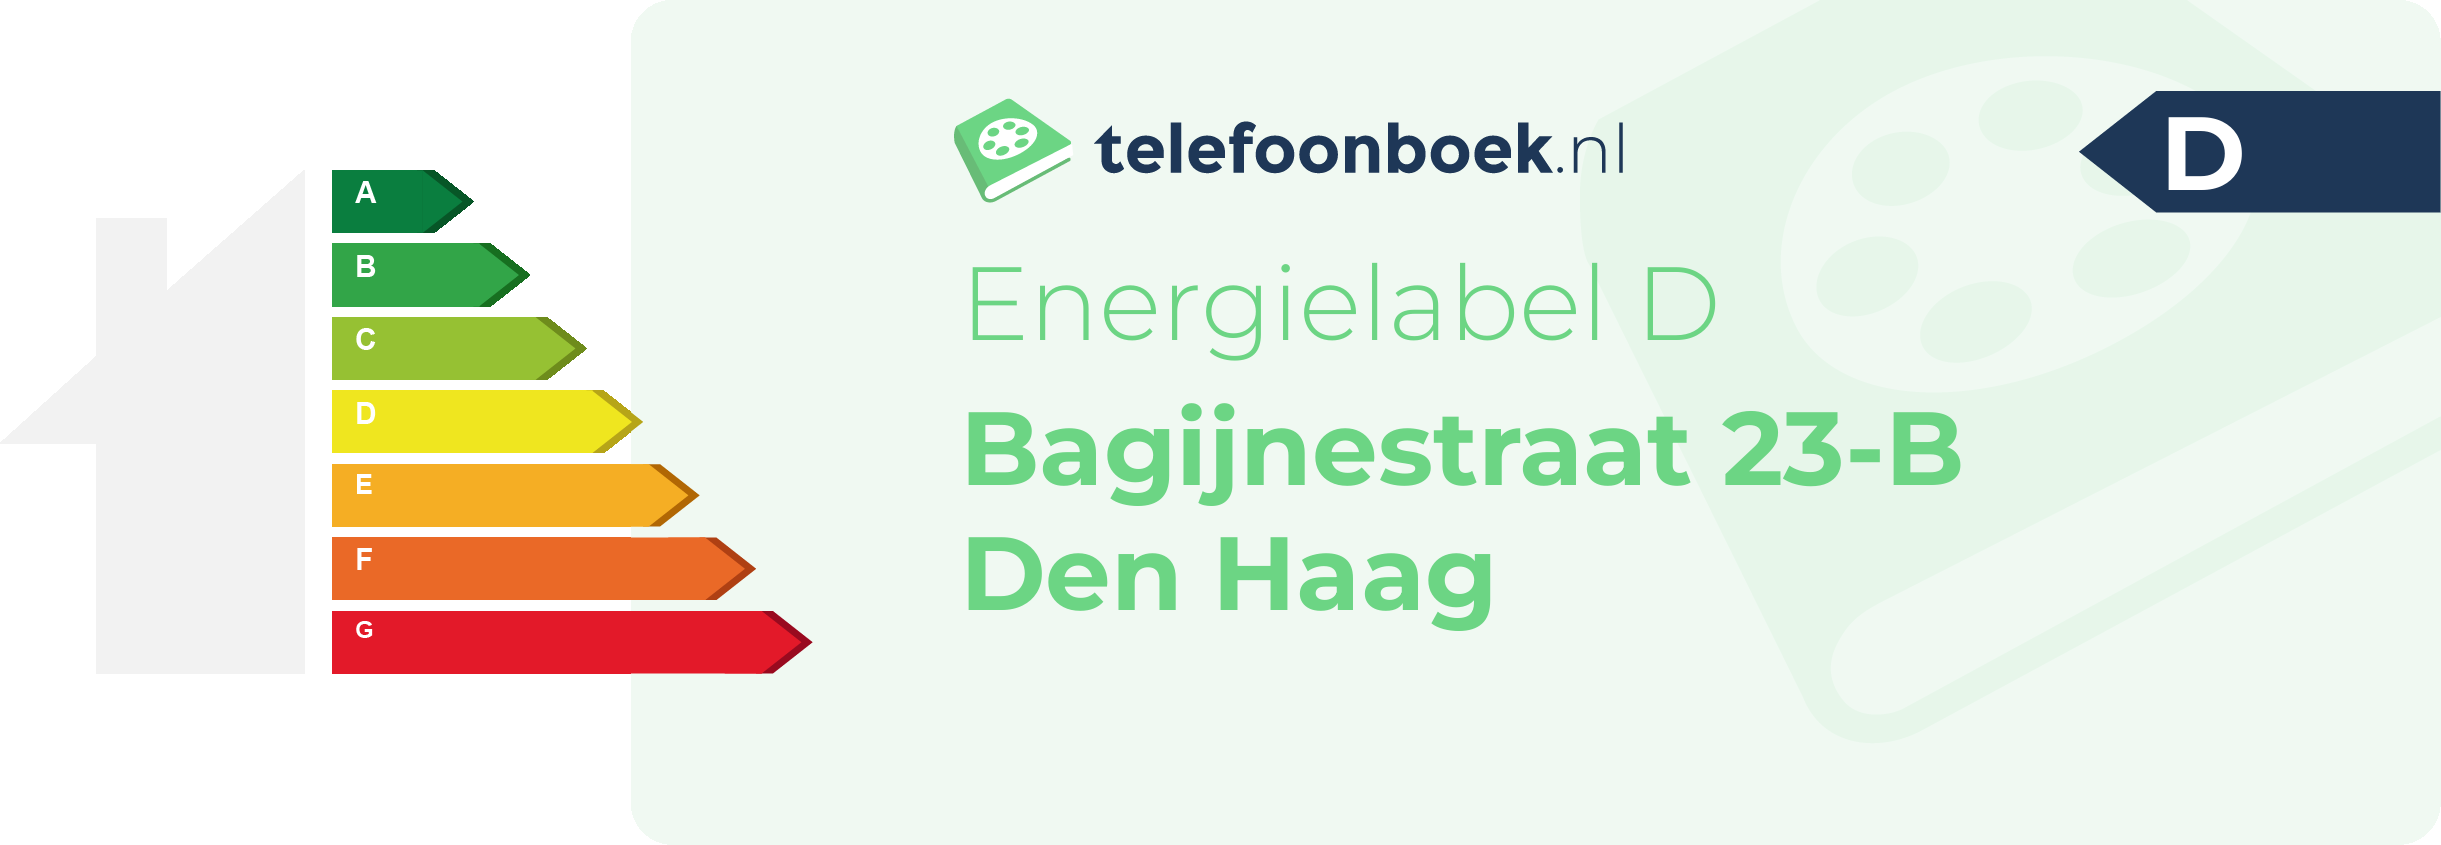 Energielabel Bagijnestraat 23-B Den Haag